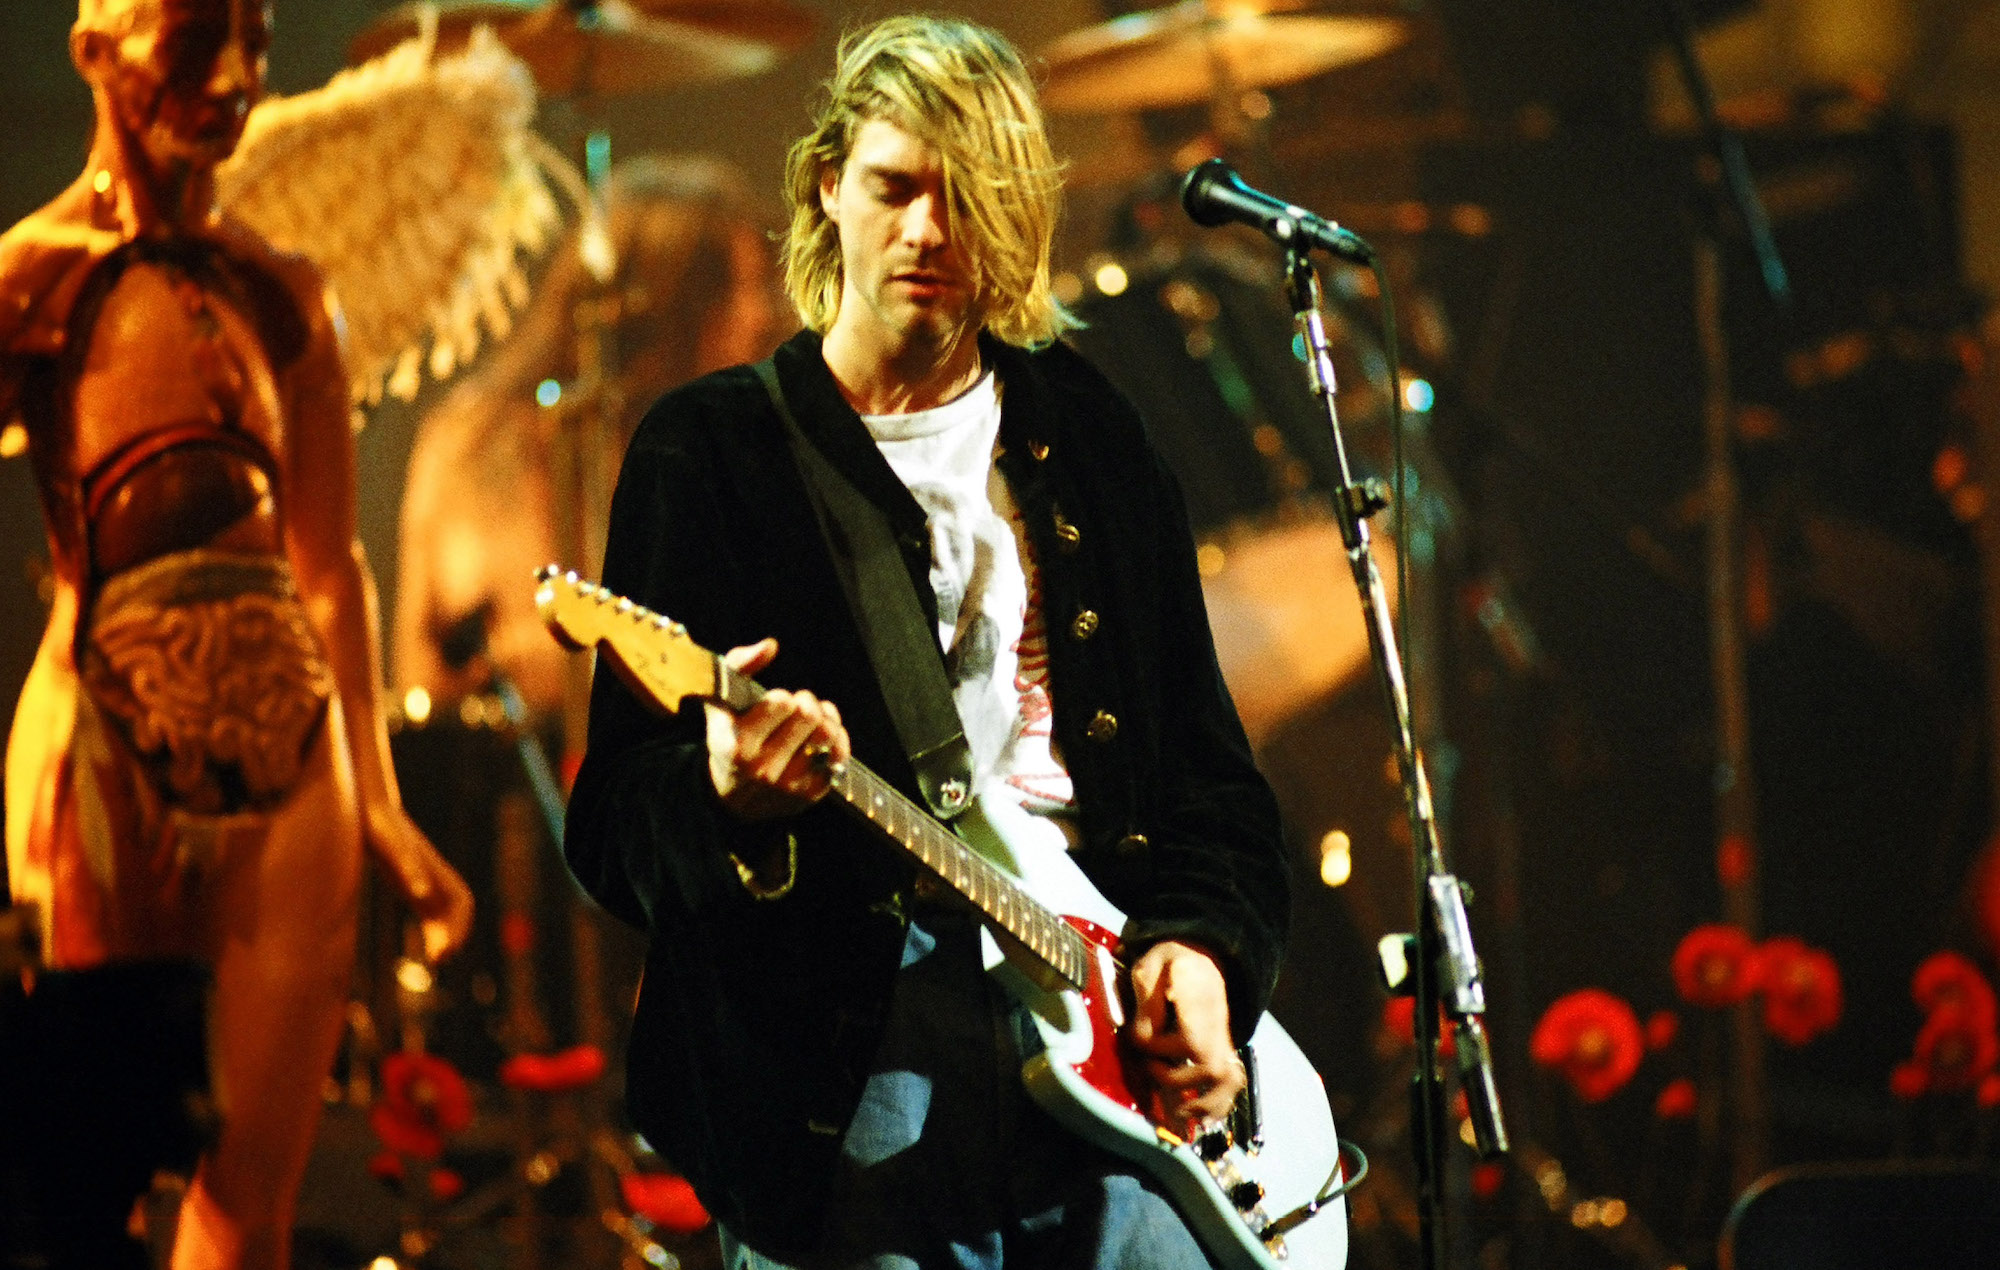 Fotos no vistas de uno de los primeros conciertos de Nirvana en el Reino Unido han sido compartidas